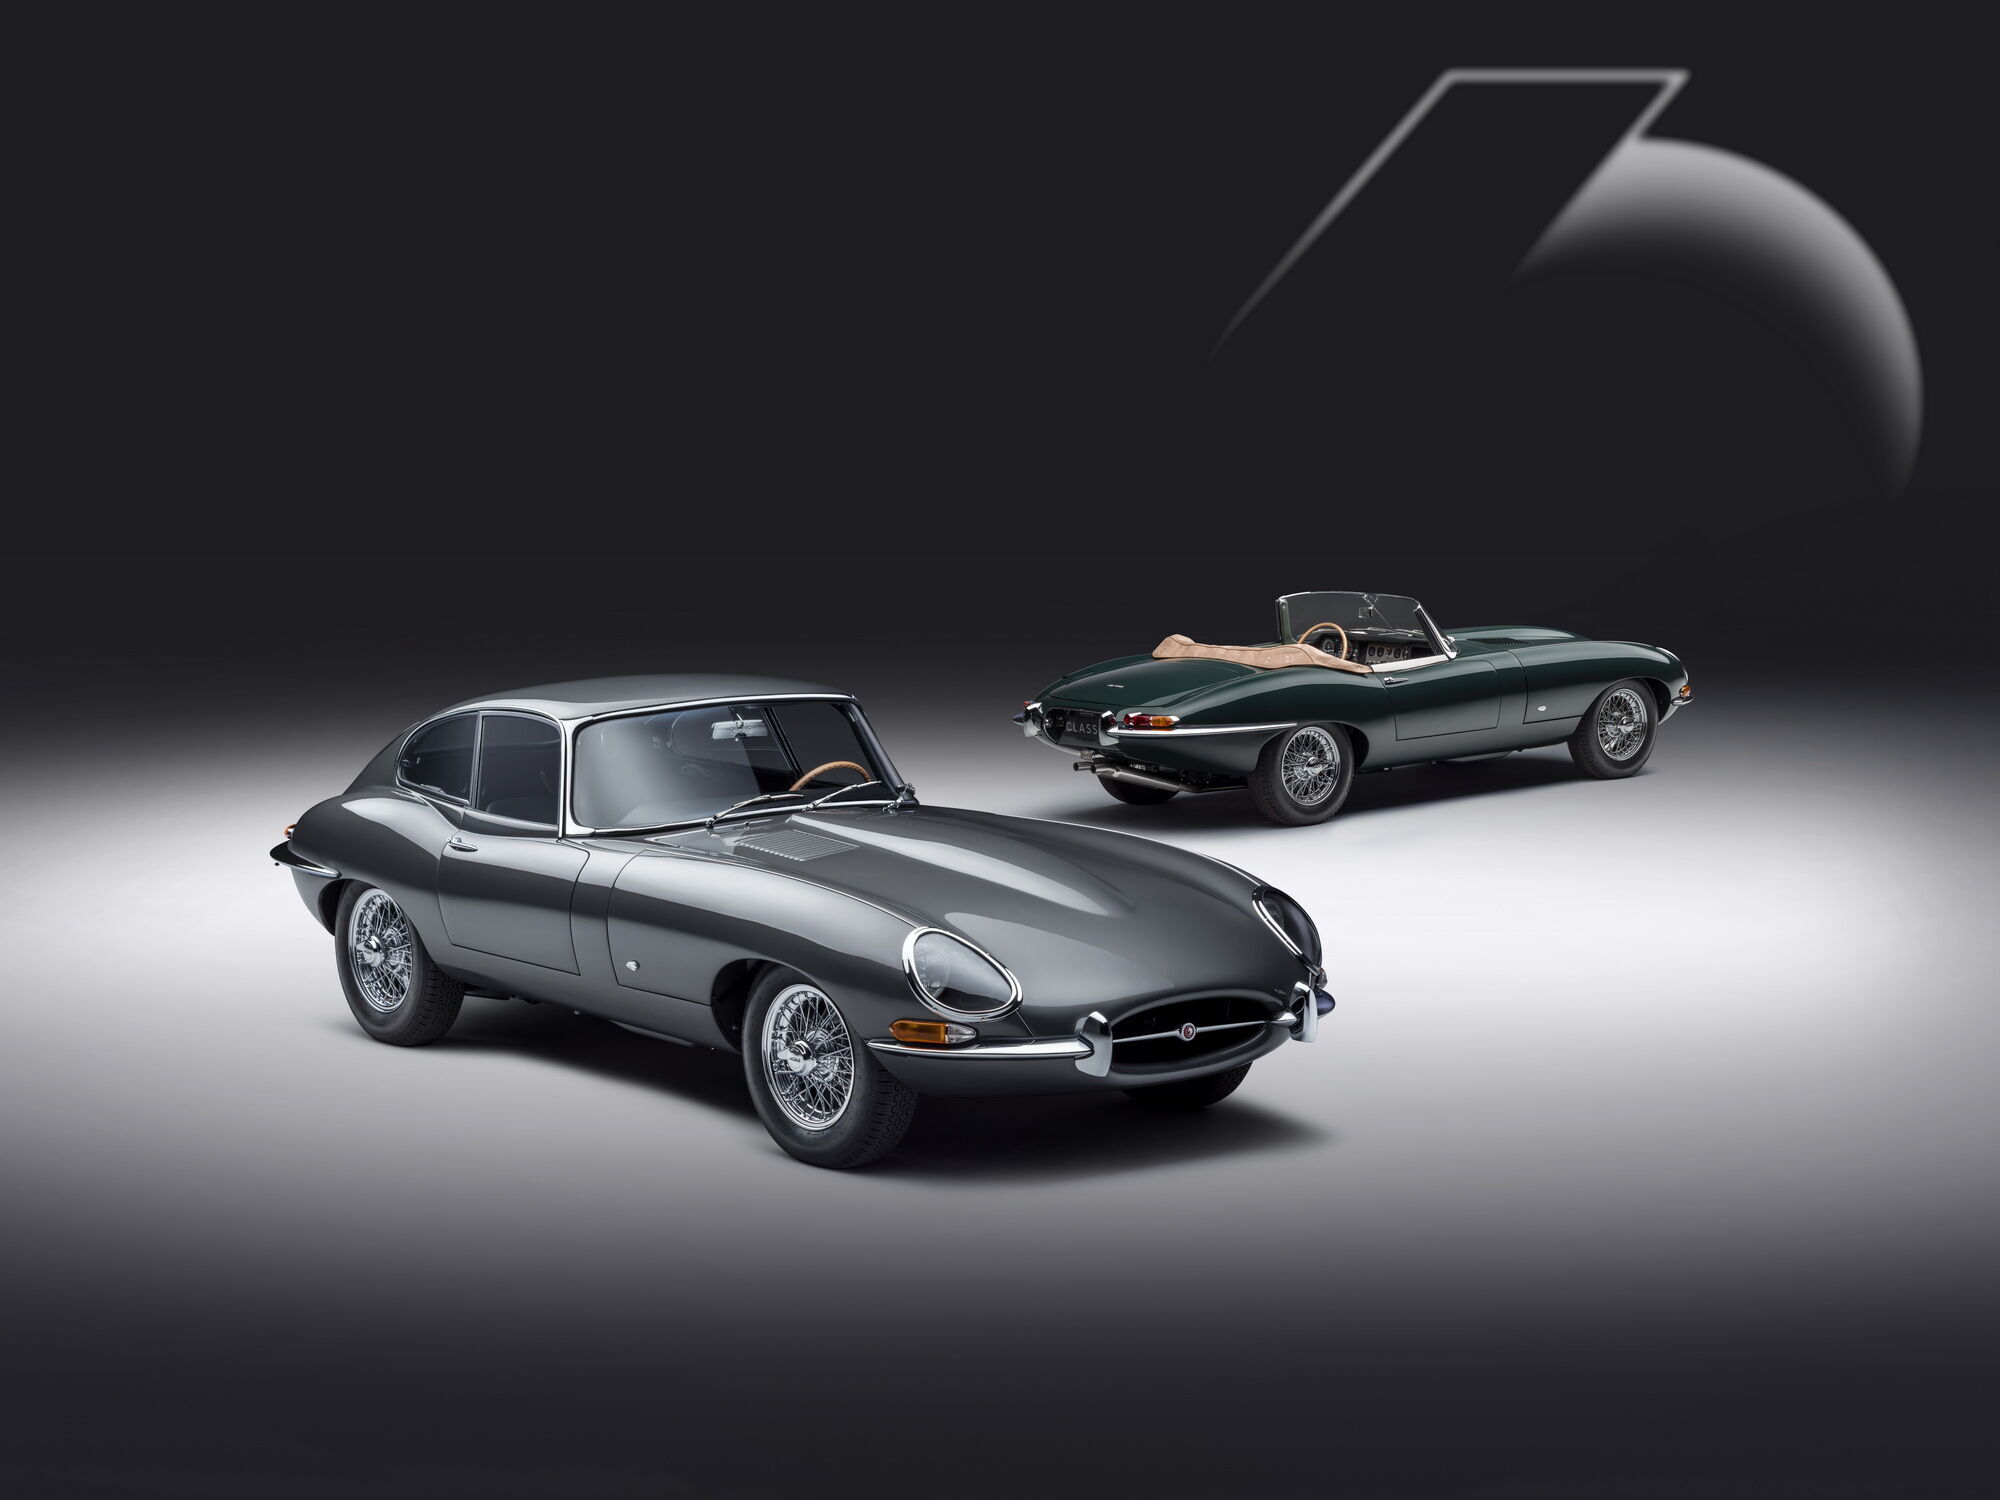 Подразделение Jaguar Classic провела реставрацию 6 купе и 6 родстеров E-type в соответствии с оригинальными образцами моделей, презентованных 60 лет назад